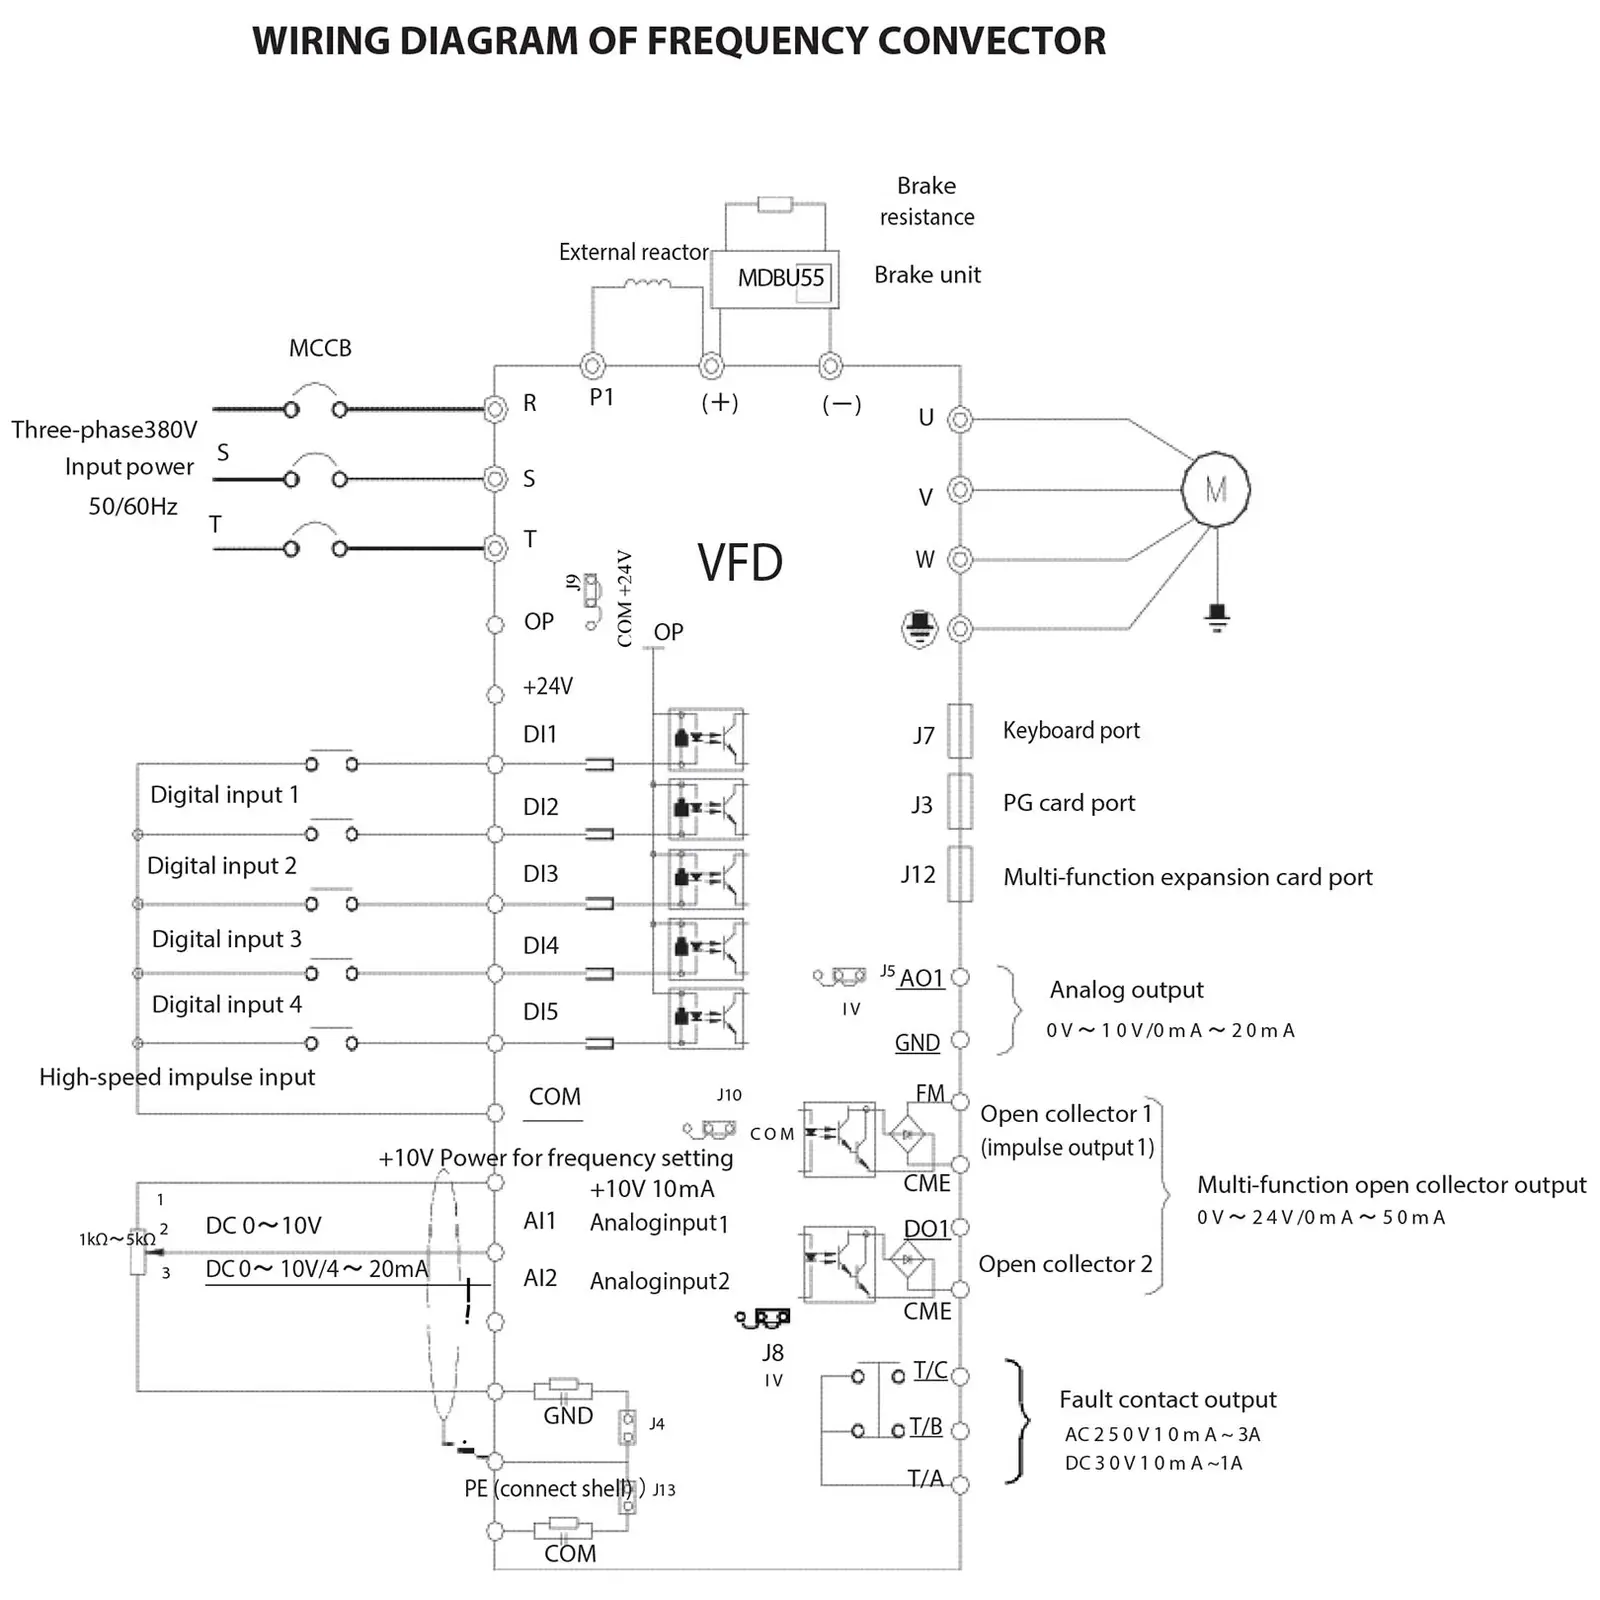 Frekvensomformer - 11 kW / 15 hk - 380 V - 50 - 60 Hz - LED